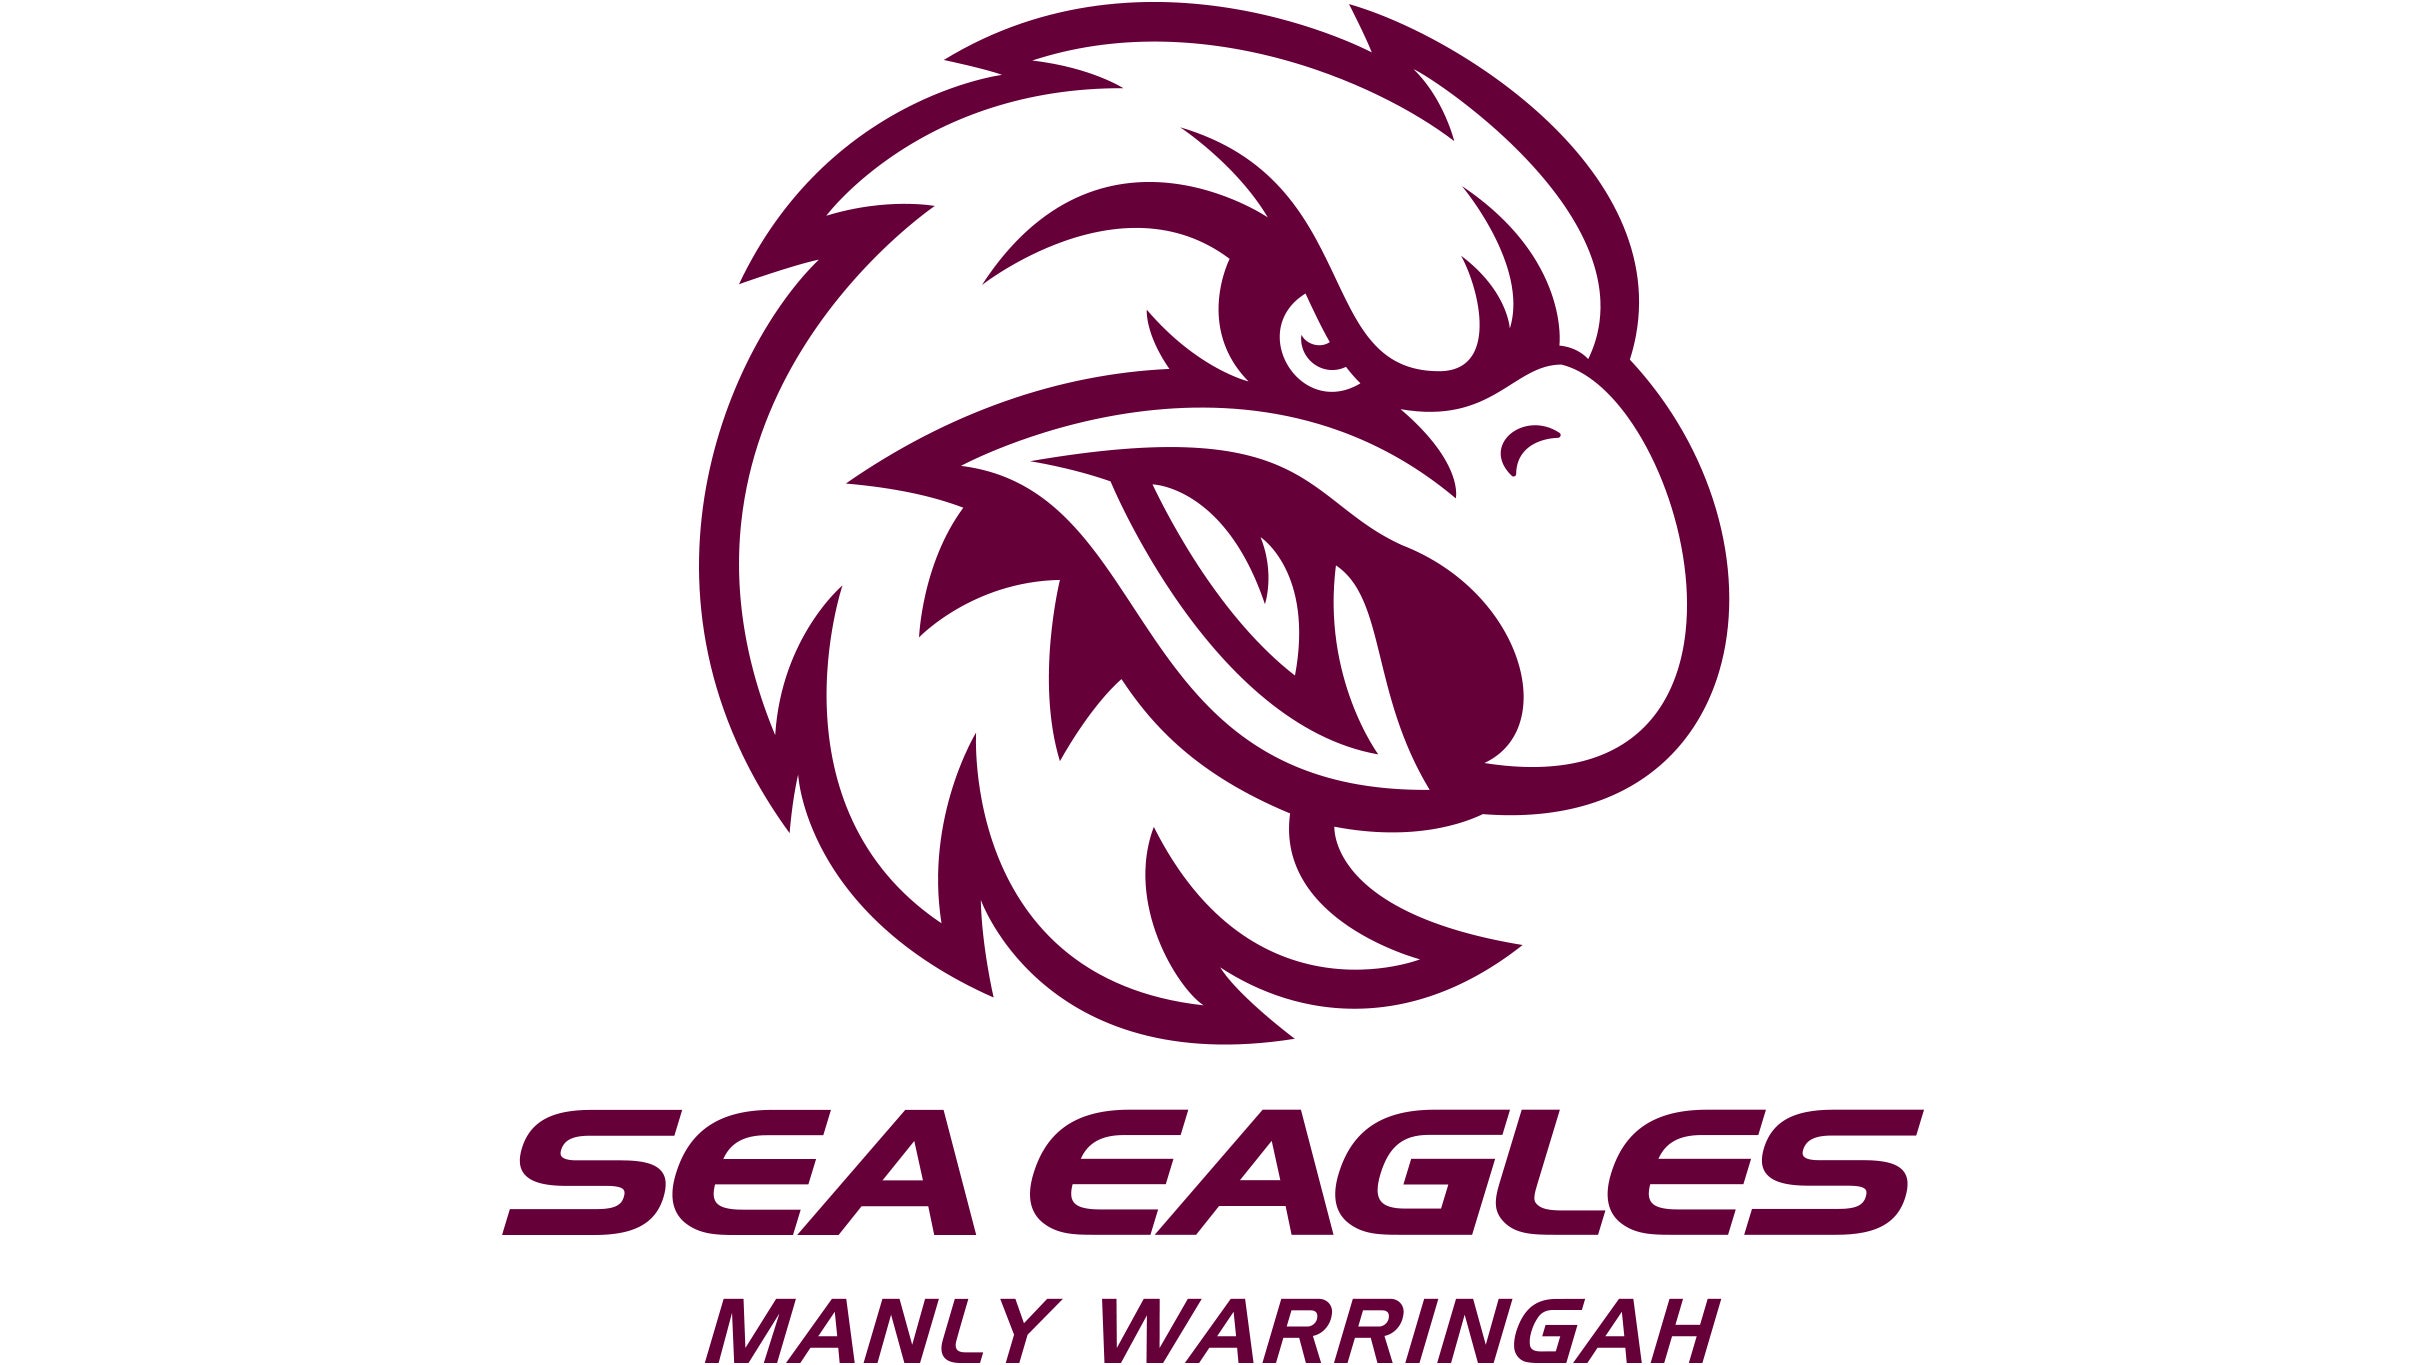 Manly Warringah Sea Eagles v Eels in Brookvale promo photo for Sea Eagles Member presale offer code